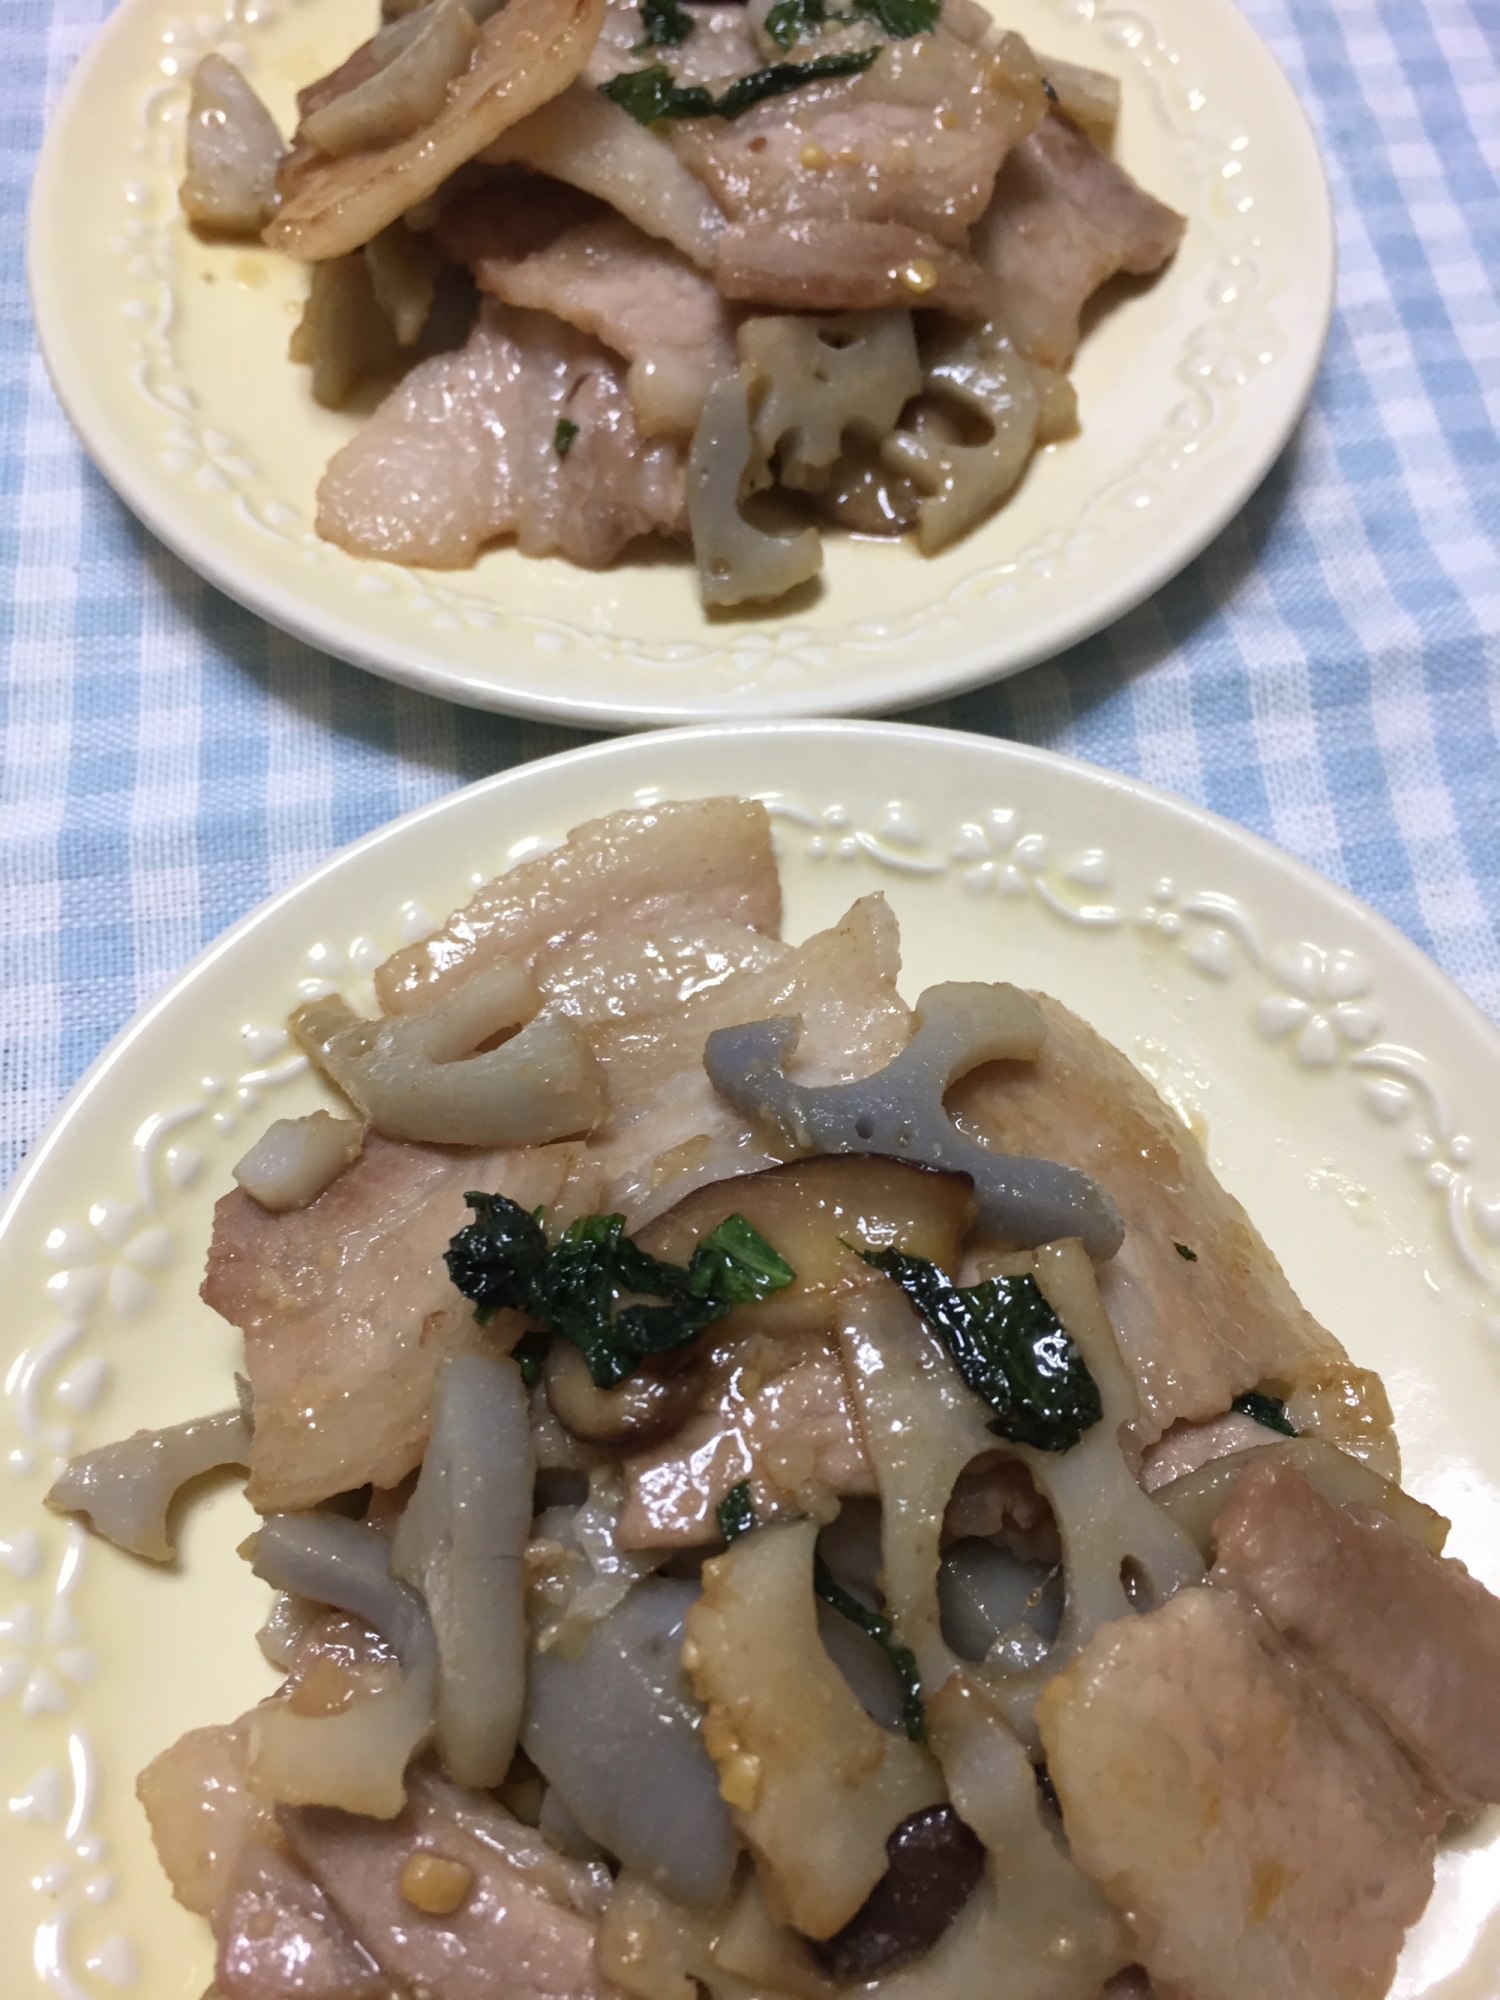 豚バラ肉と蓮根と椎茸のニンニク味噌炒め